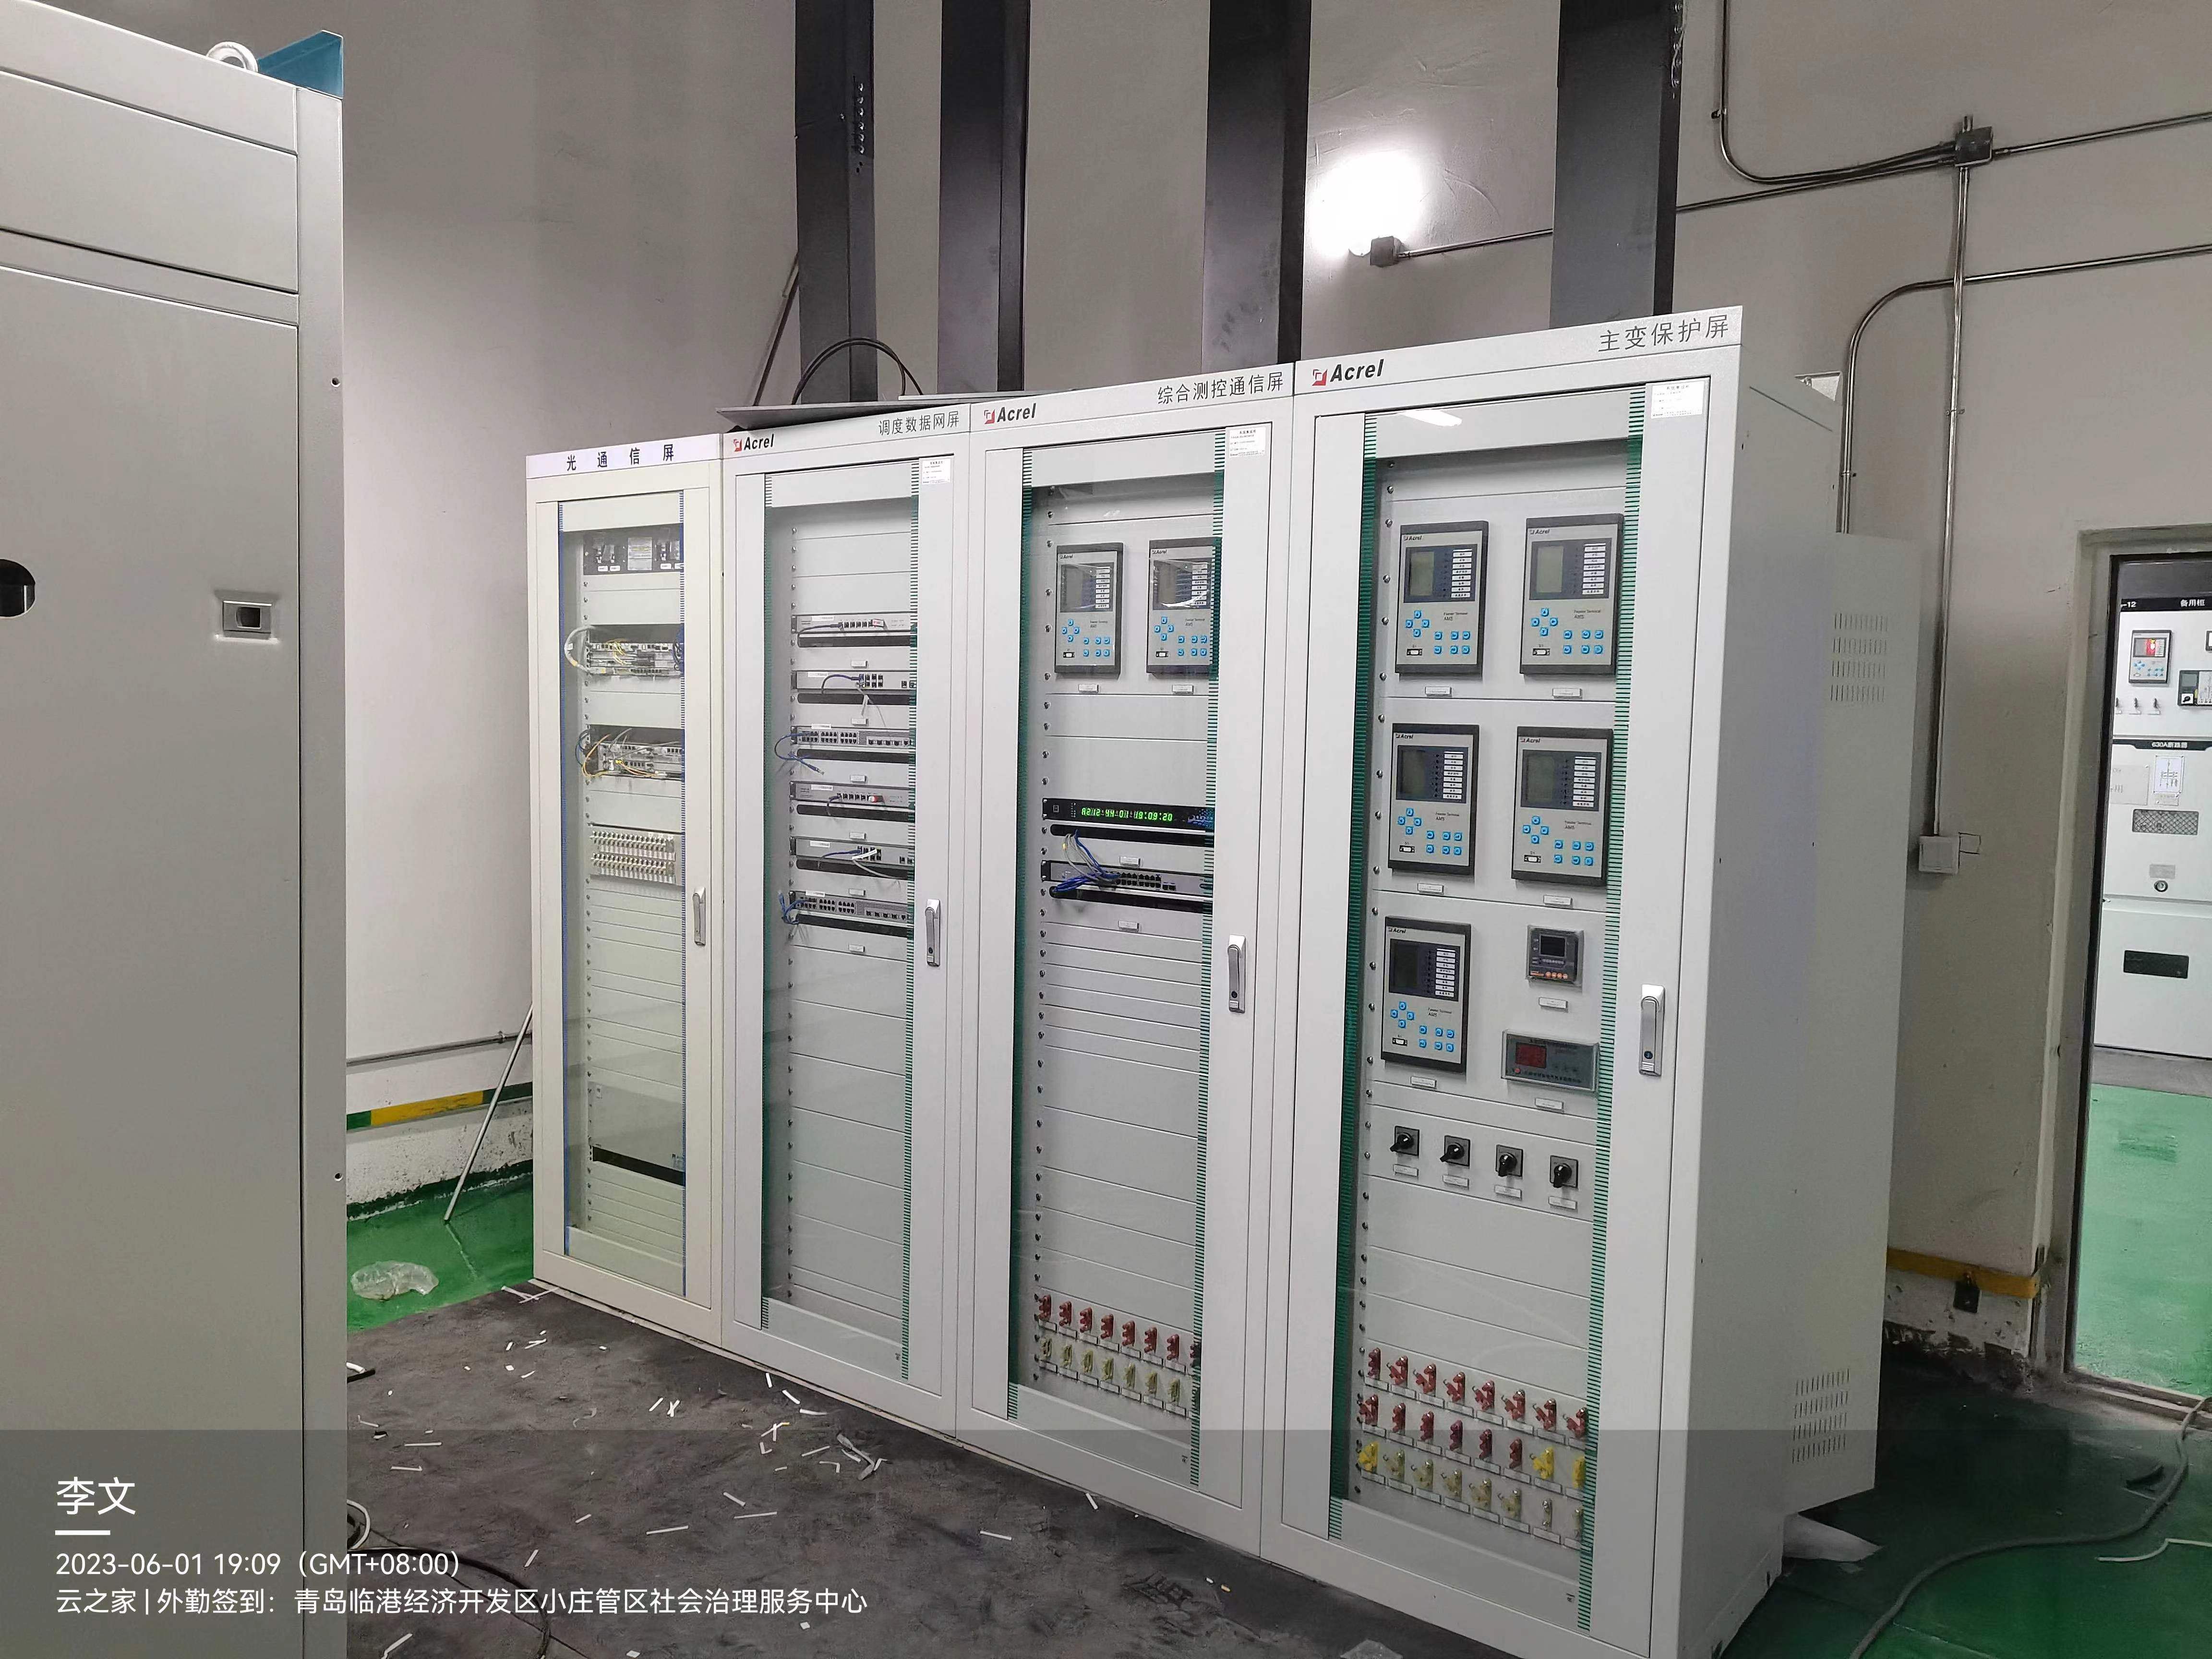 安科瑞变电站综合自动化系统在青岛海洋科技园应用